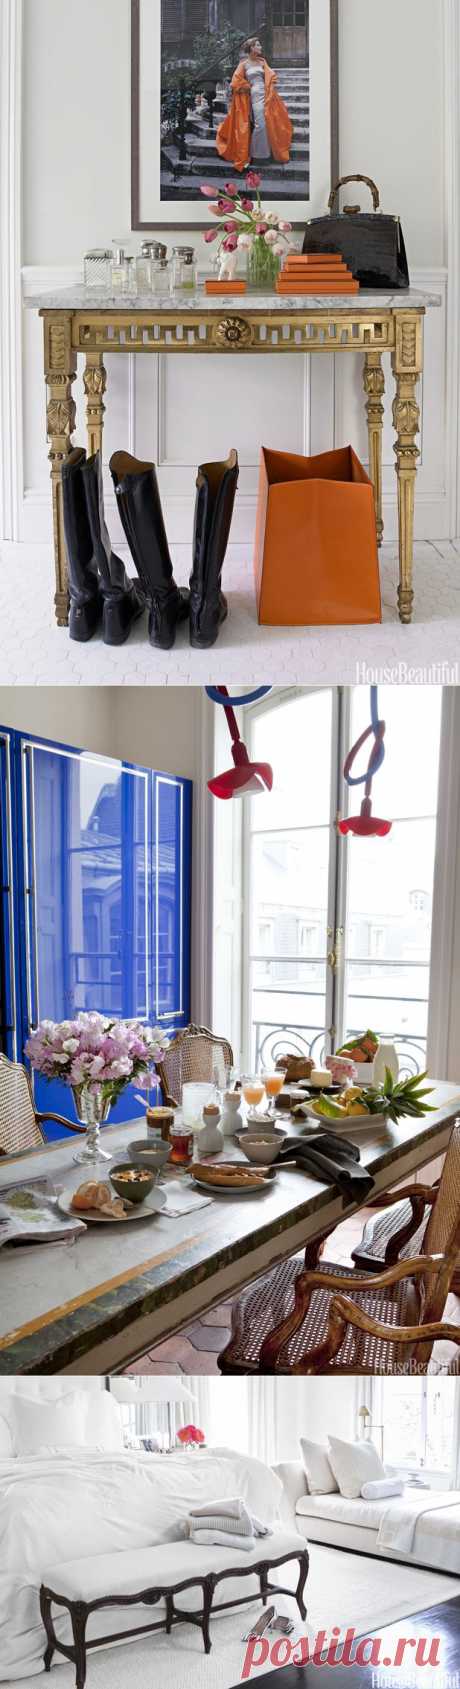 Paris Decorating Style - Parisian Apartment Decor - ELLE DECOR